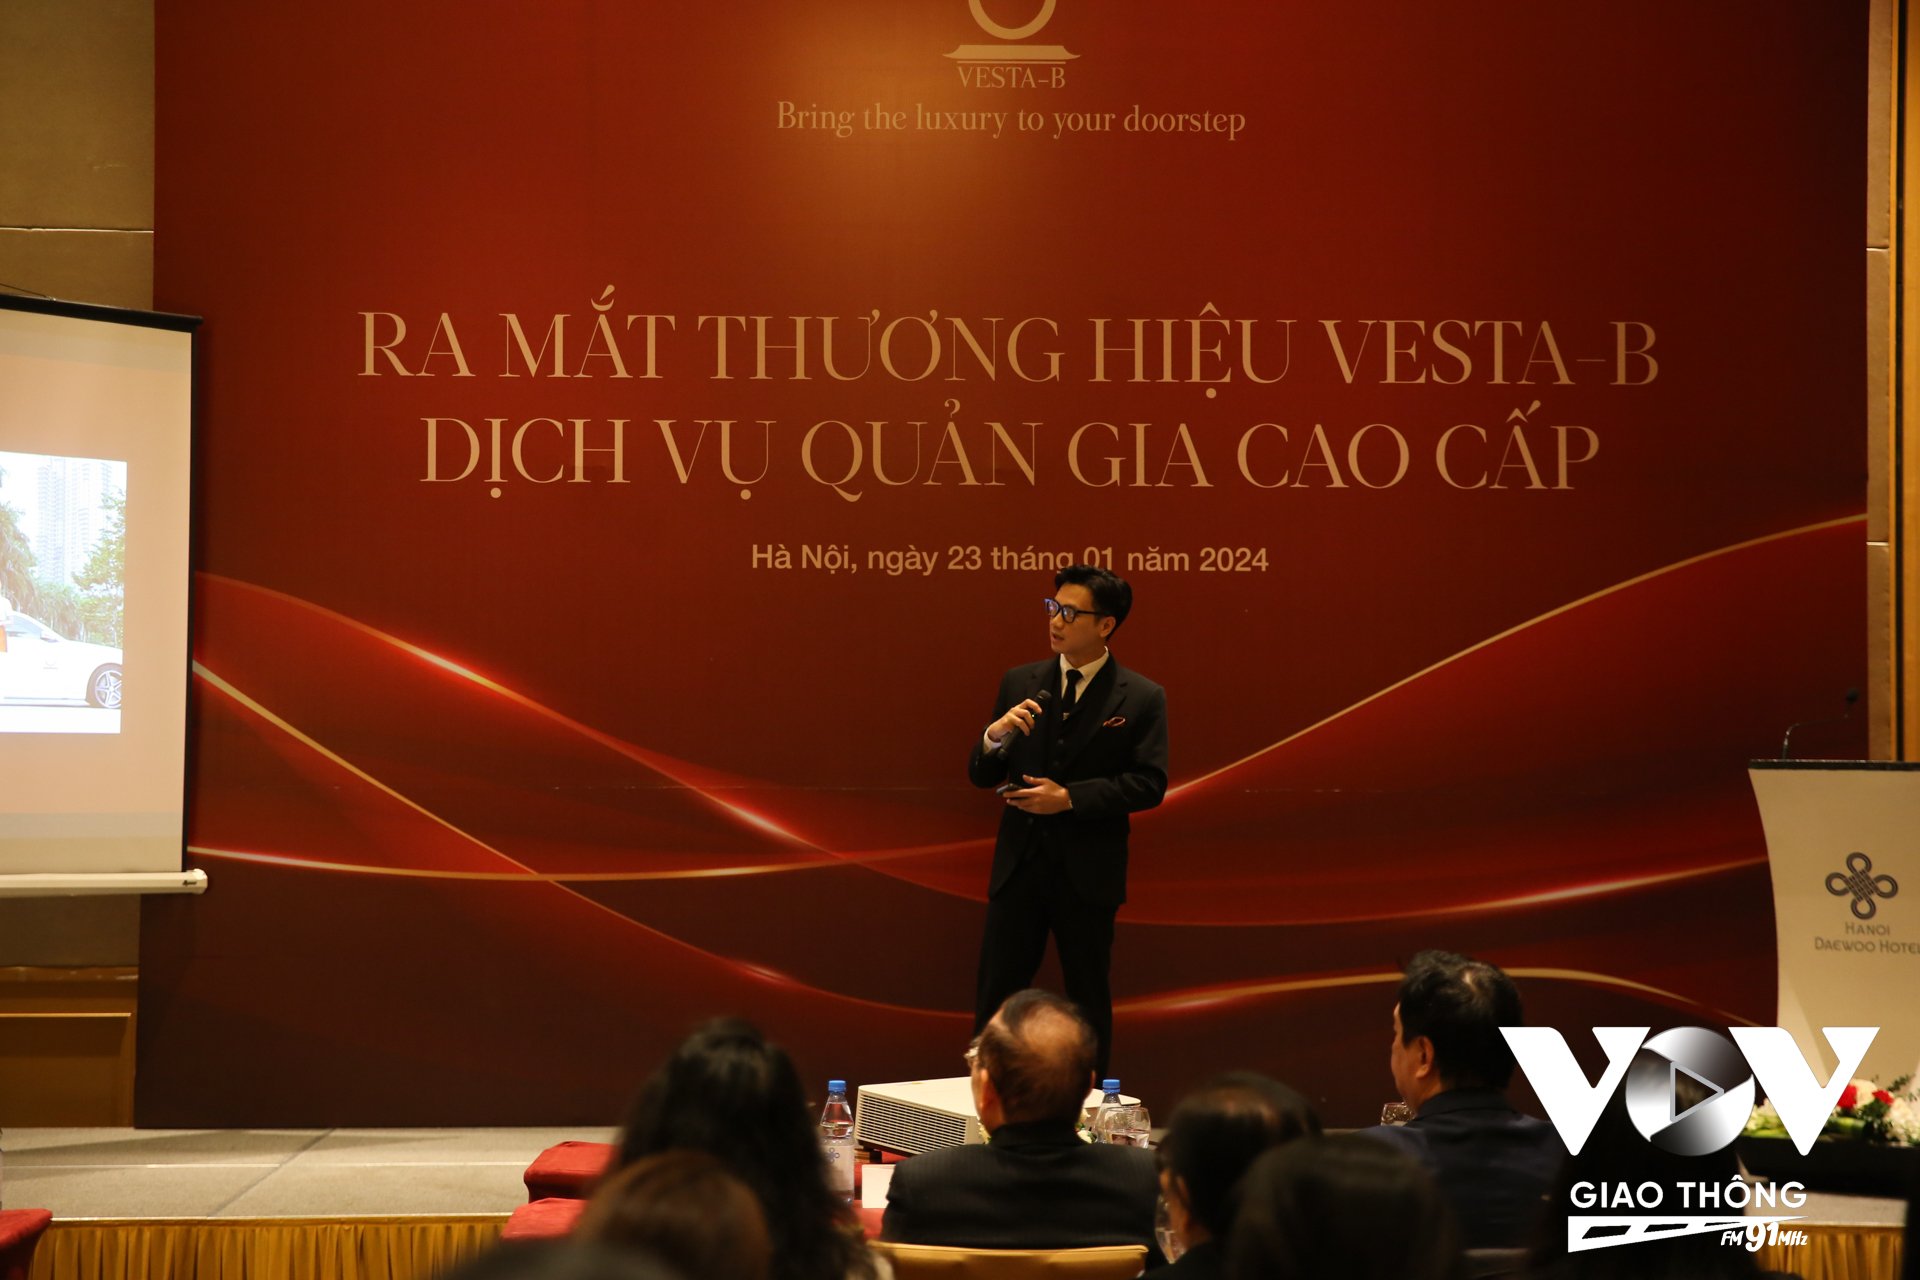 Ông Hoàng Vũ Lâm - Phó Tổng Giám đốc Vesta B chia sẻ, Công ty đã dành hơn 2 năm để nghiên cứu và vận hành thử nghiệm các hoạt động đào tạo toàn diện kỹ năng cho quản gia nhằm hoàn thiện giáo trình